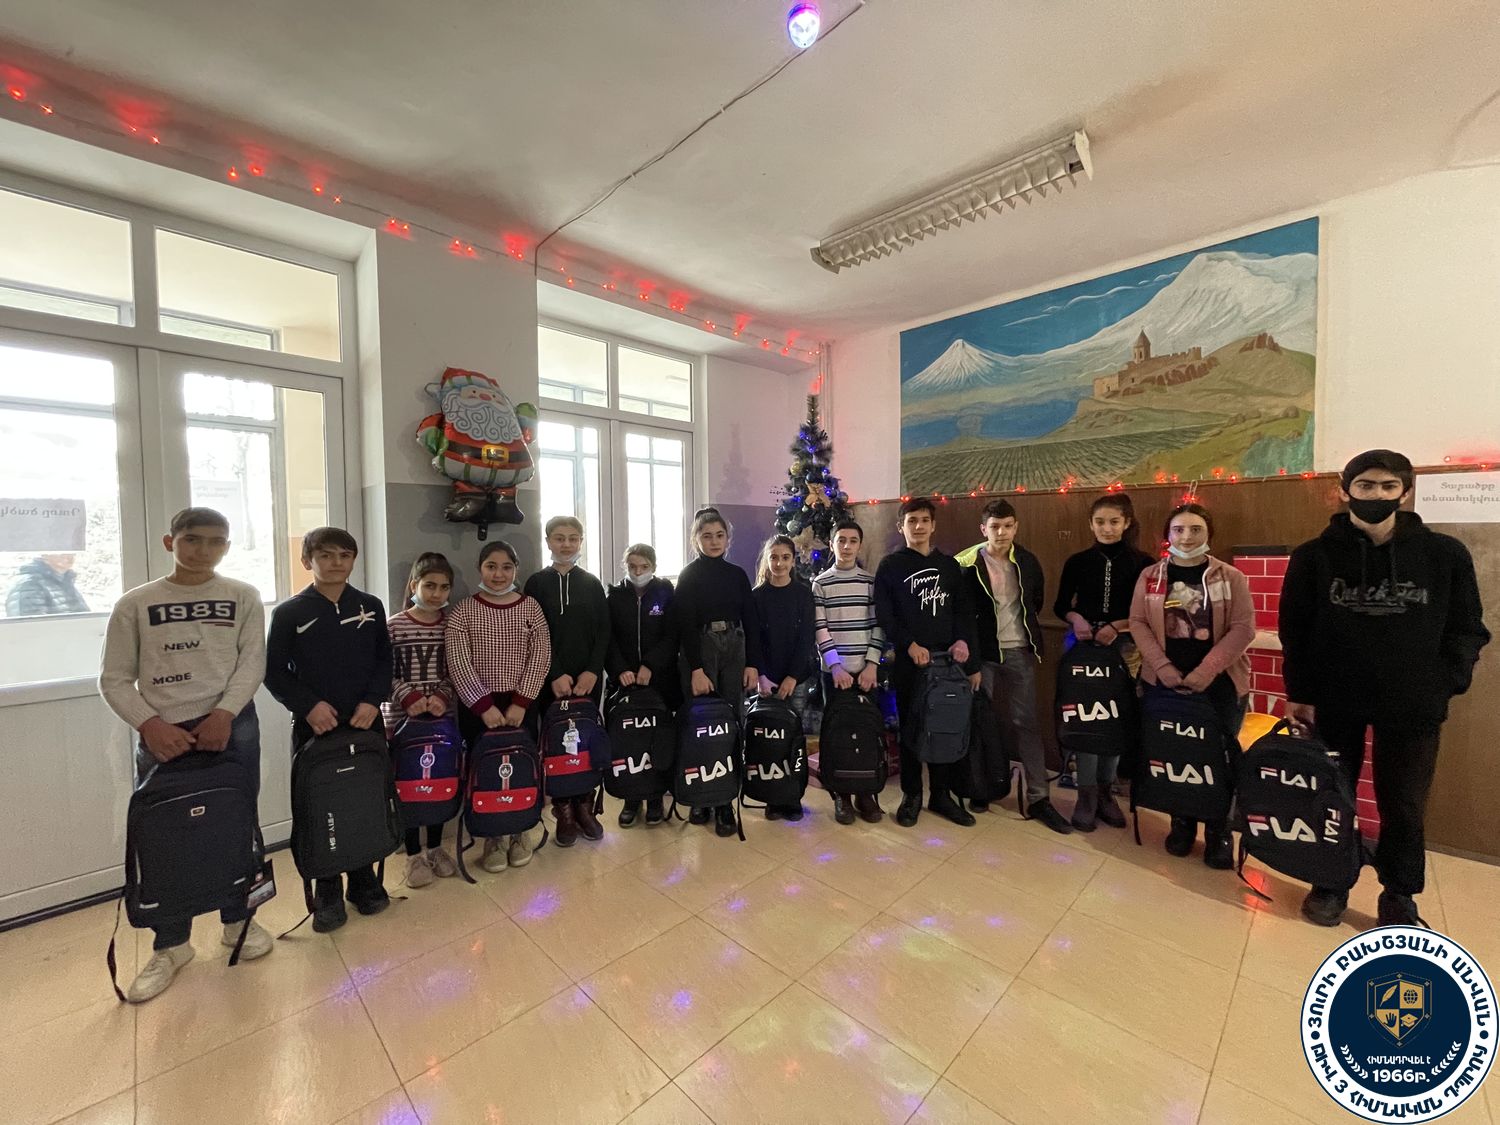 Արցախից տեղահանված ընտանիքների երեխաները Հայկական Կարմիր խաչի ընկերության կողմից ստացան գրենական պիտույքներով լի պայուսակներ